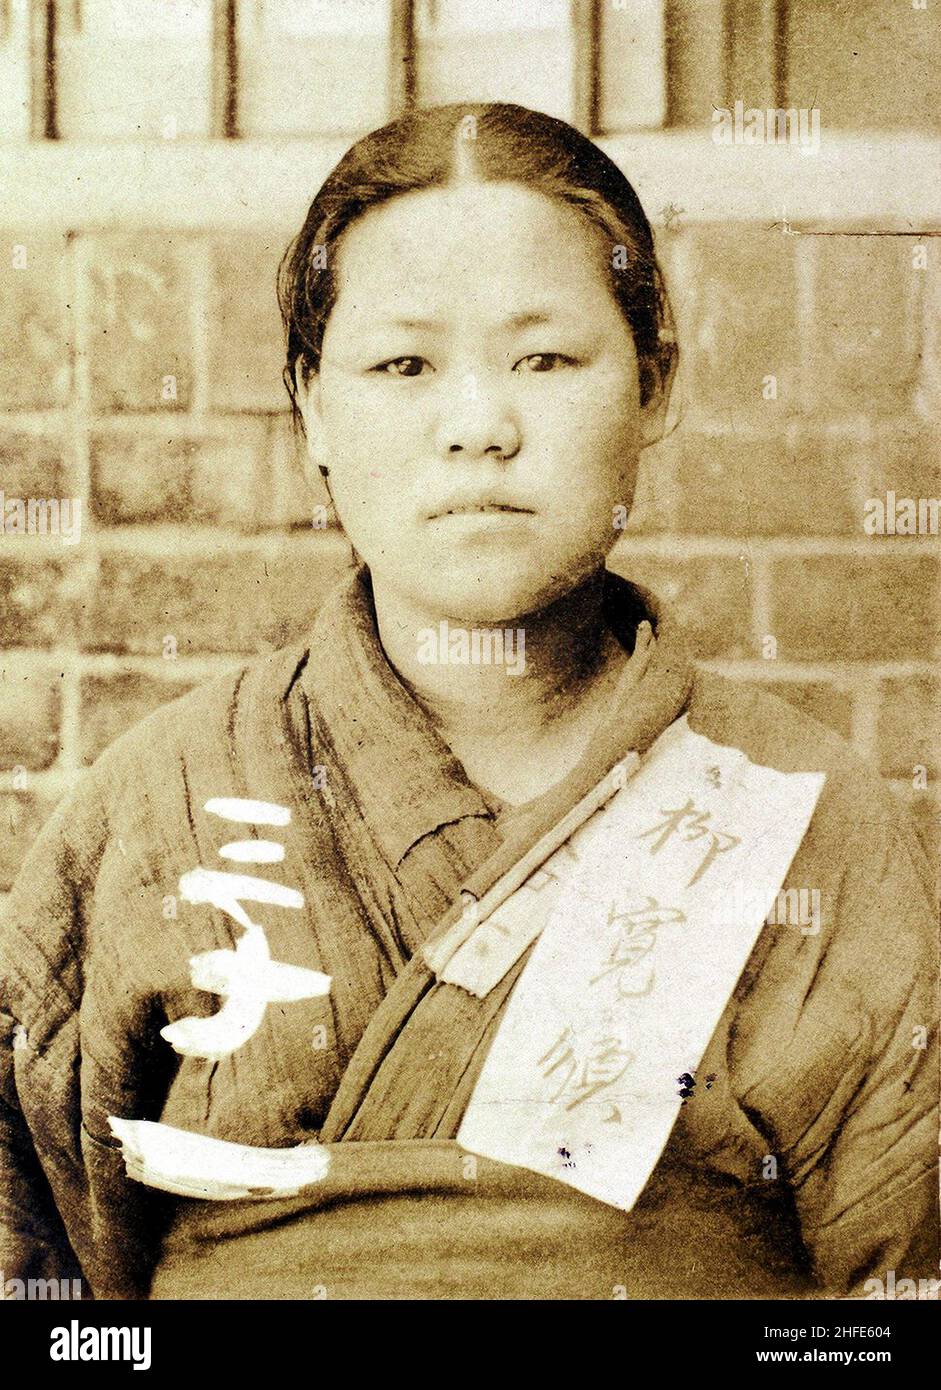 Portrait de Ryu Gwansun (Décembre 16, 1902 - Septembre 28, 1920), connue en tant qu'organisateur de le mouvement du 1er mars contre Imperial de la colonisation japonaise de la Corée du Sud dans le Chungcheong, Collection privée. Banque D'Images